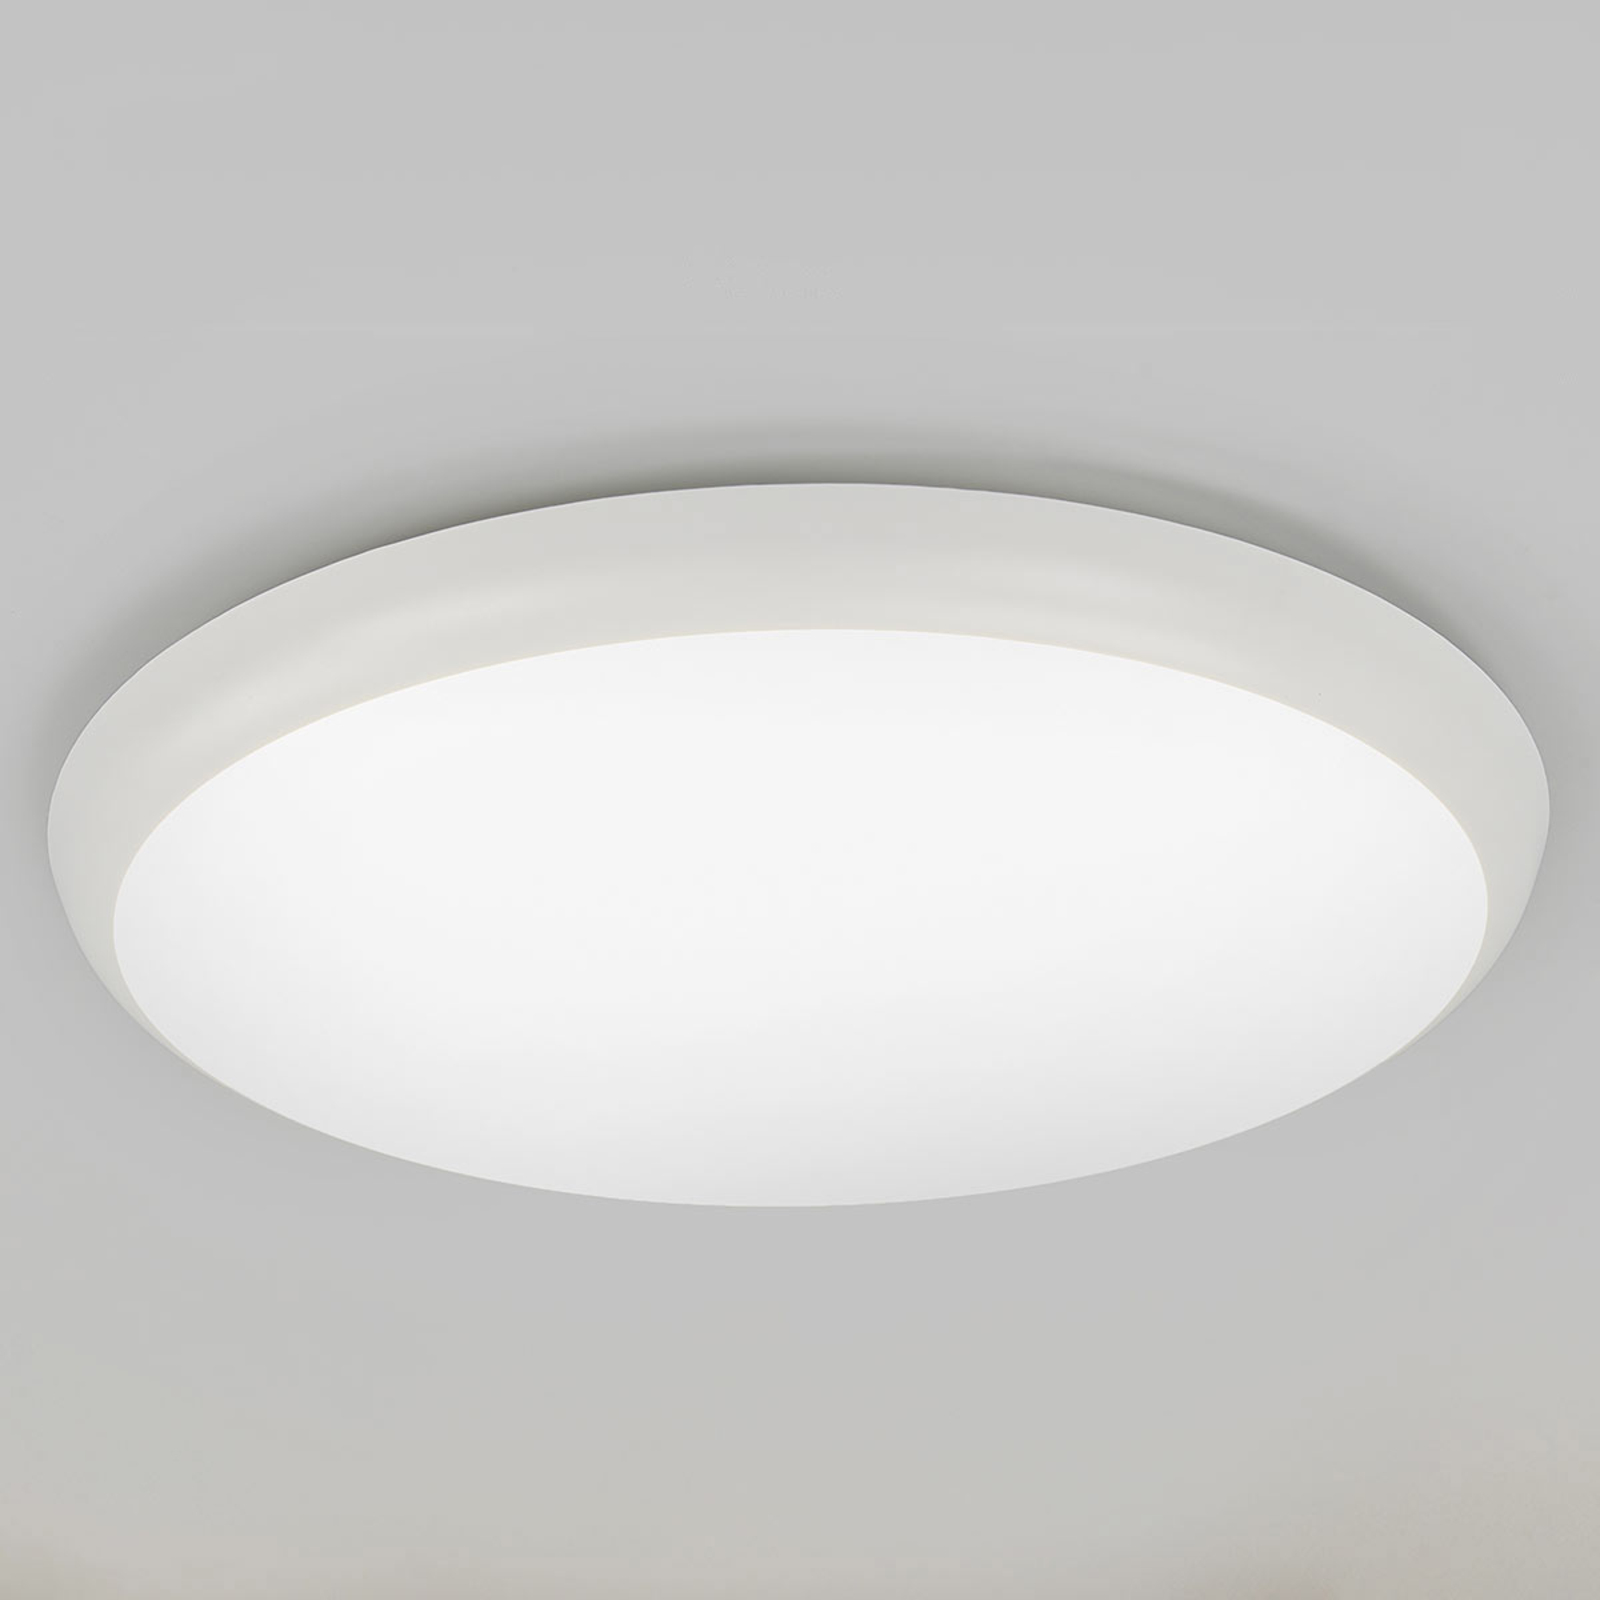 Augustin - LED plafondlamp in ronde vorm, 40 cm